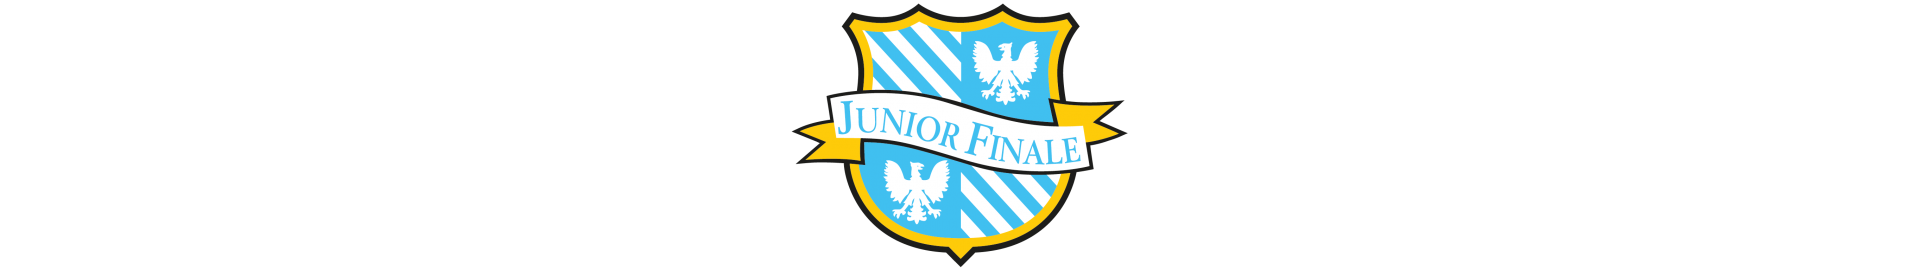 Project Junior Finale Emilia Calcio